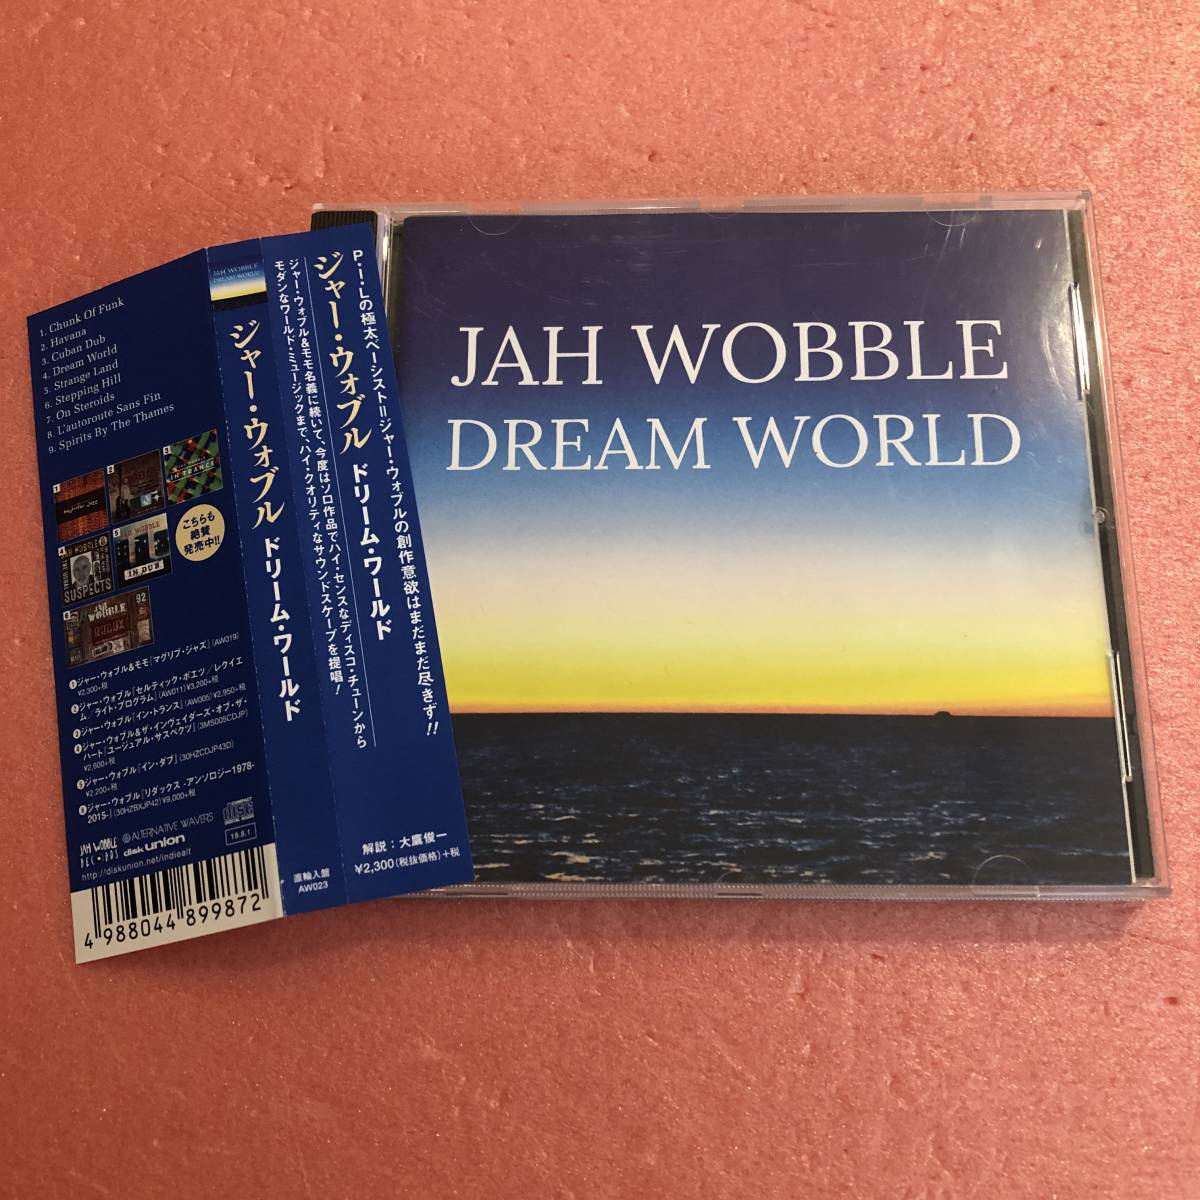 CD 国内盤 帯付 ジャー ウォブル ドリーム ワールド Jah Wobble Dream World P.I.L._画像1